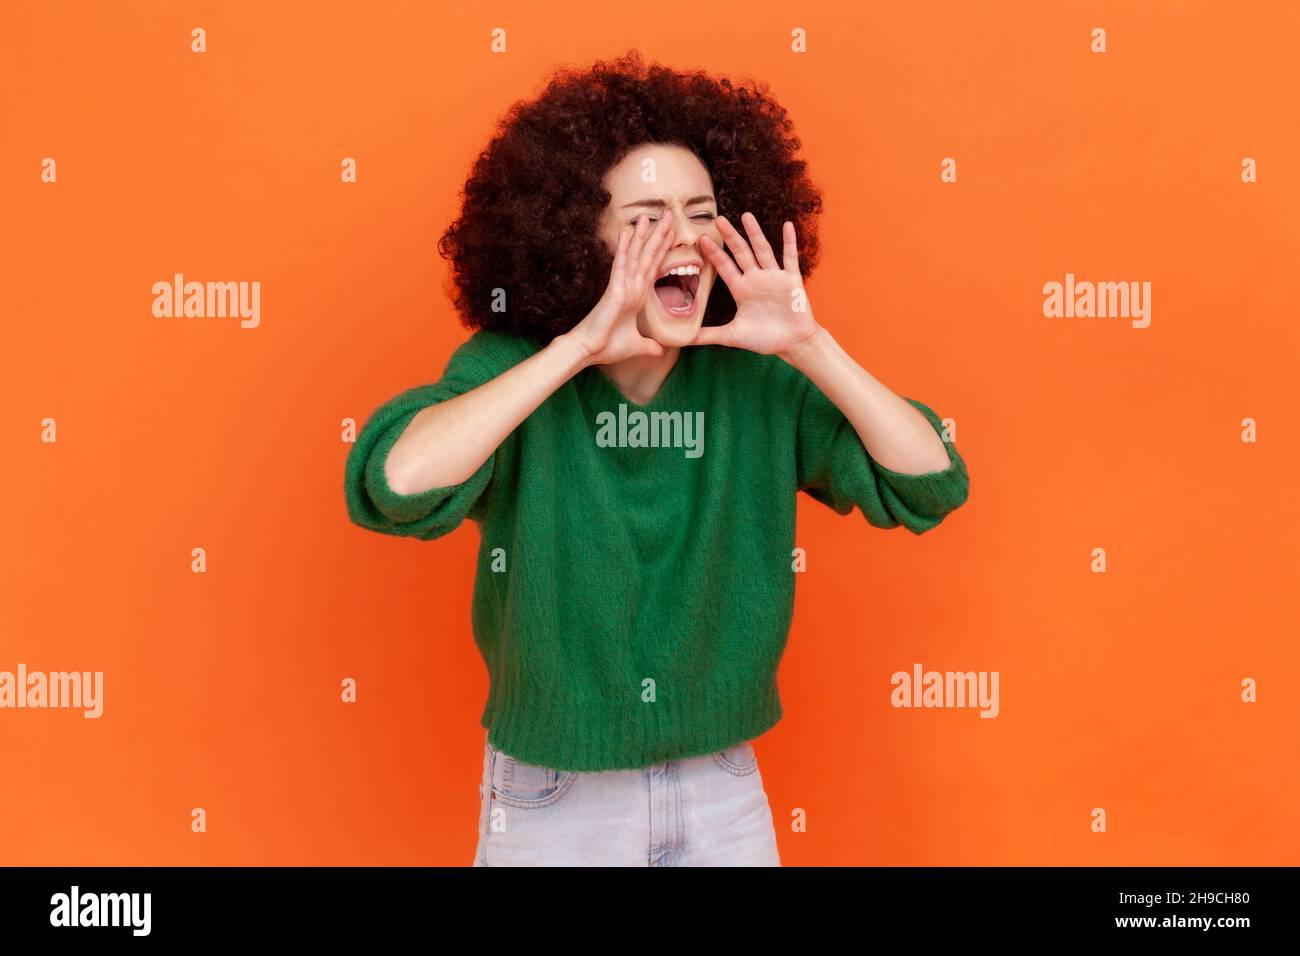 Achtung, Ankündigung. Seitenansicht Porträt einer Frau mit Afro-Frisur trägt grünen lässigen Stil Pullover schreiende Botschaft, laute Werbung. Innenaufnahme des Studios isoliert auf orangefarbenem Hintergrund. Stockfoto